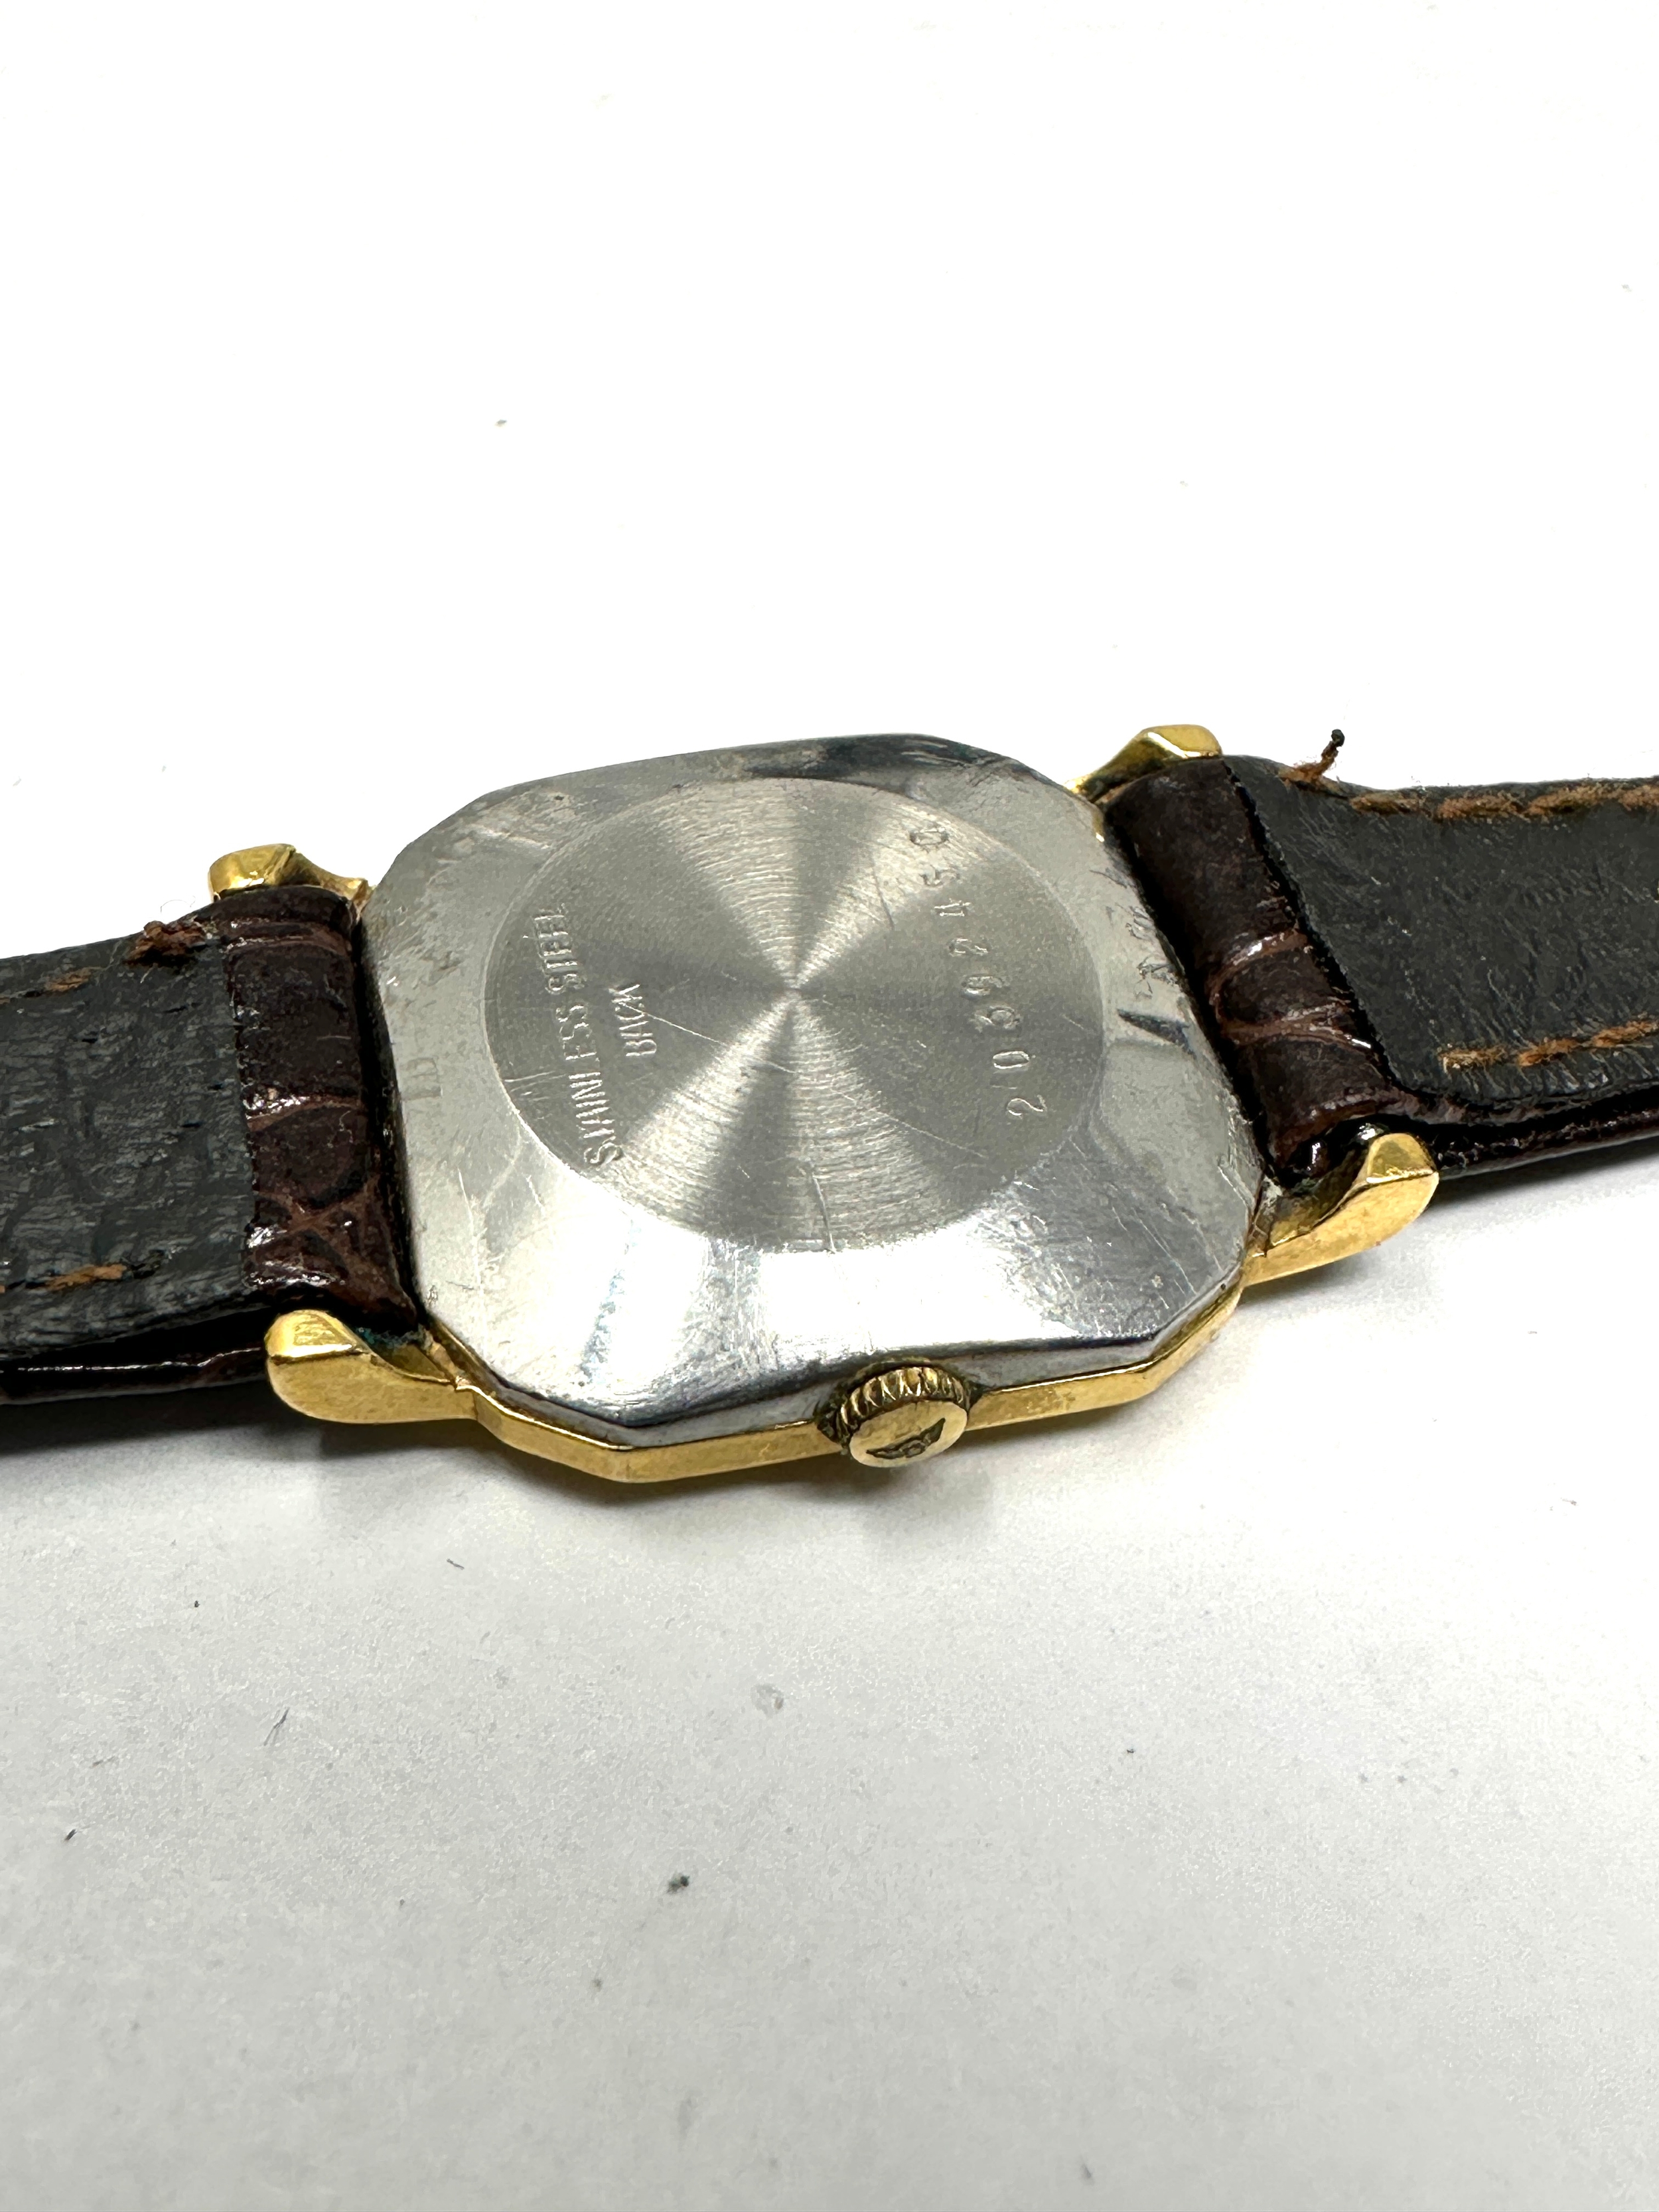 Ladies Longines quartz wristwatch the watch is not ticking - Bild 3 aus 4